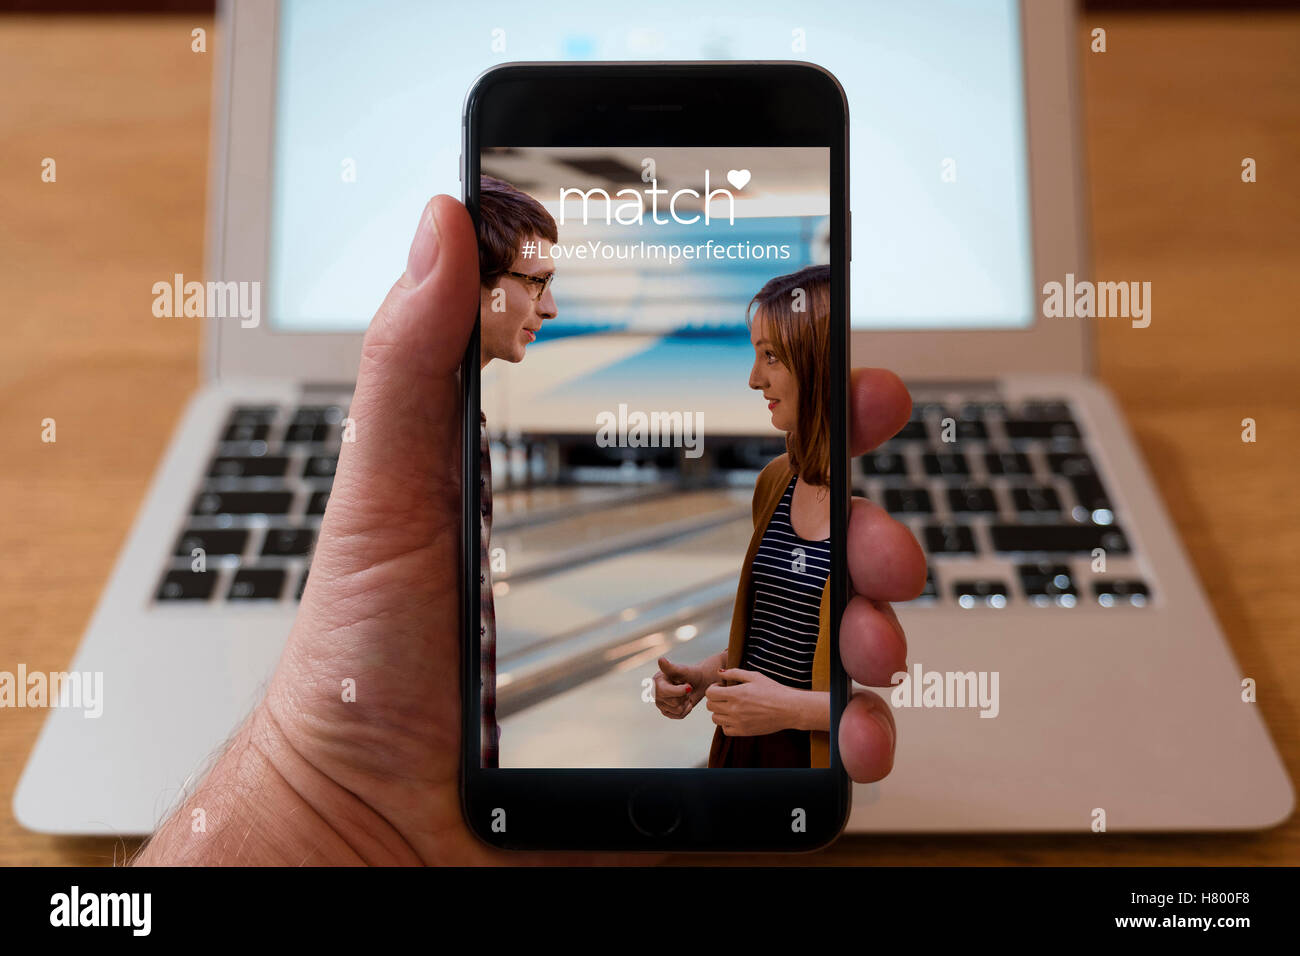 Usando el iPhone Smartphone Mostrar página de Match.com el online dating website Foto de stock